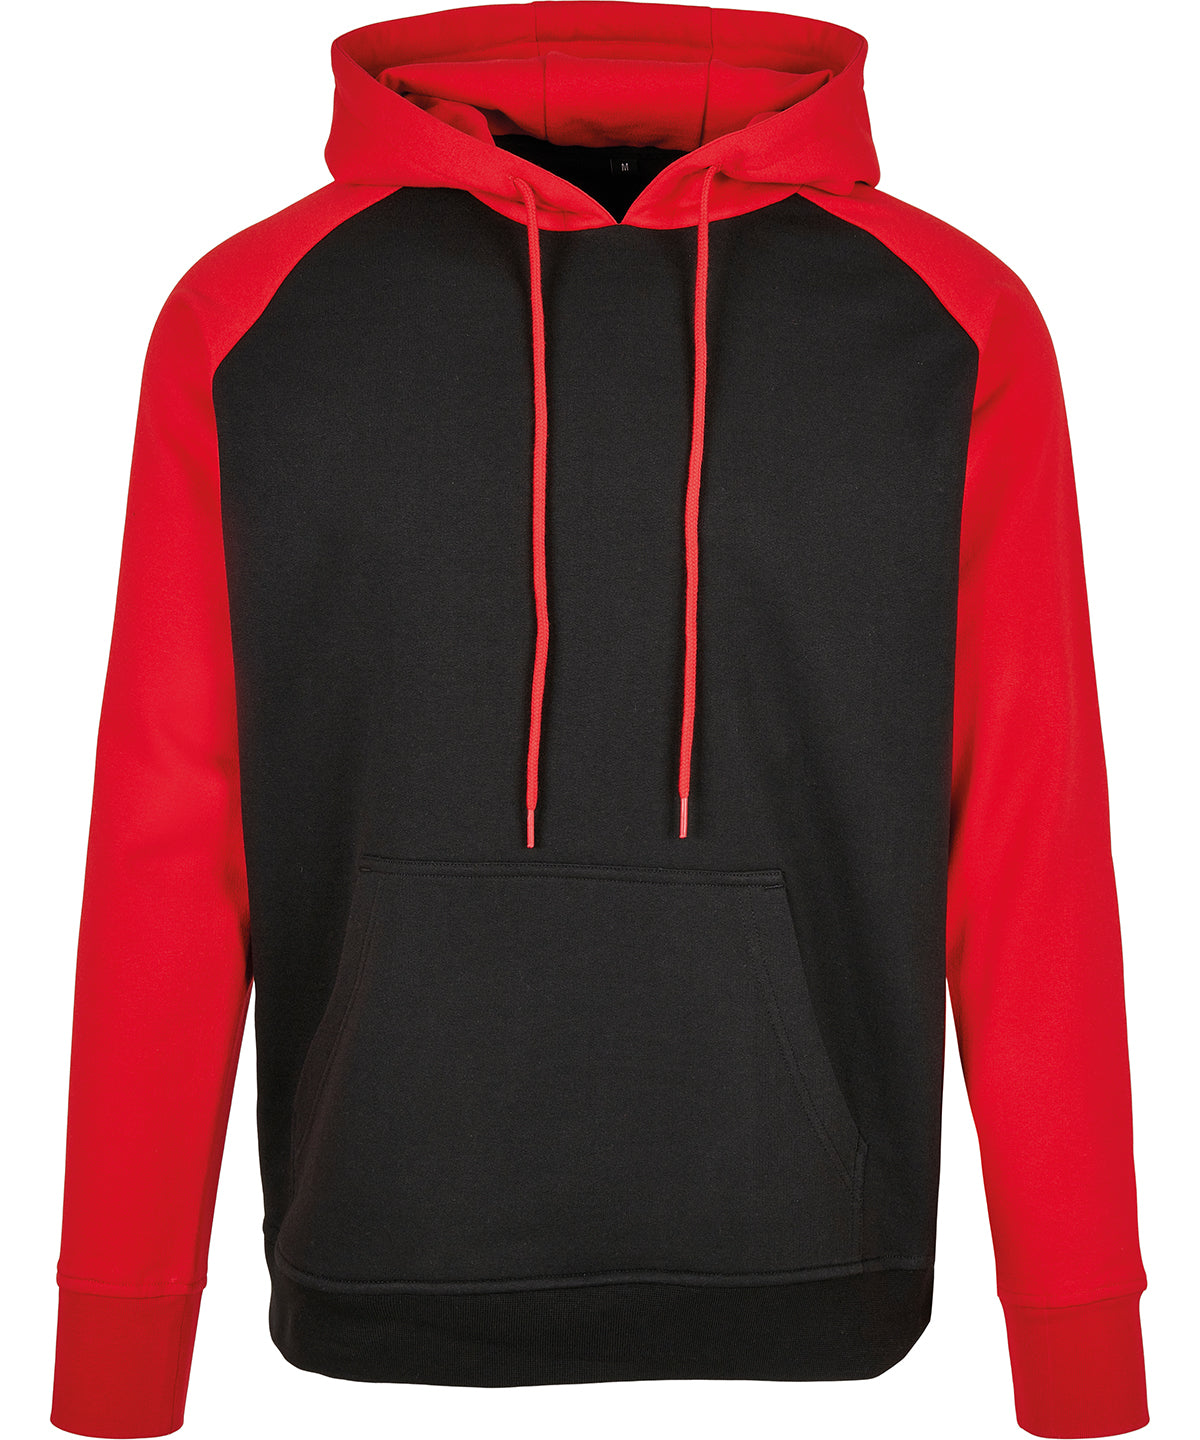 Personalised Hoodies - Black Build Your Brand Basic Basic raglan hoodie